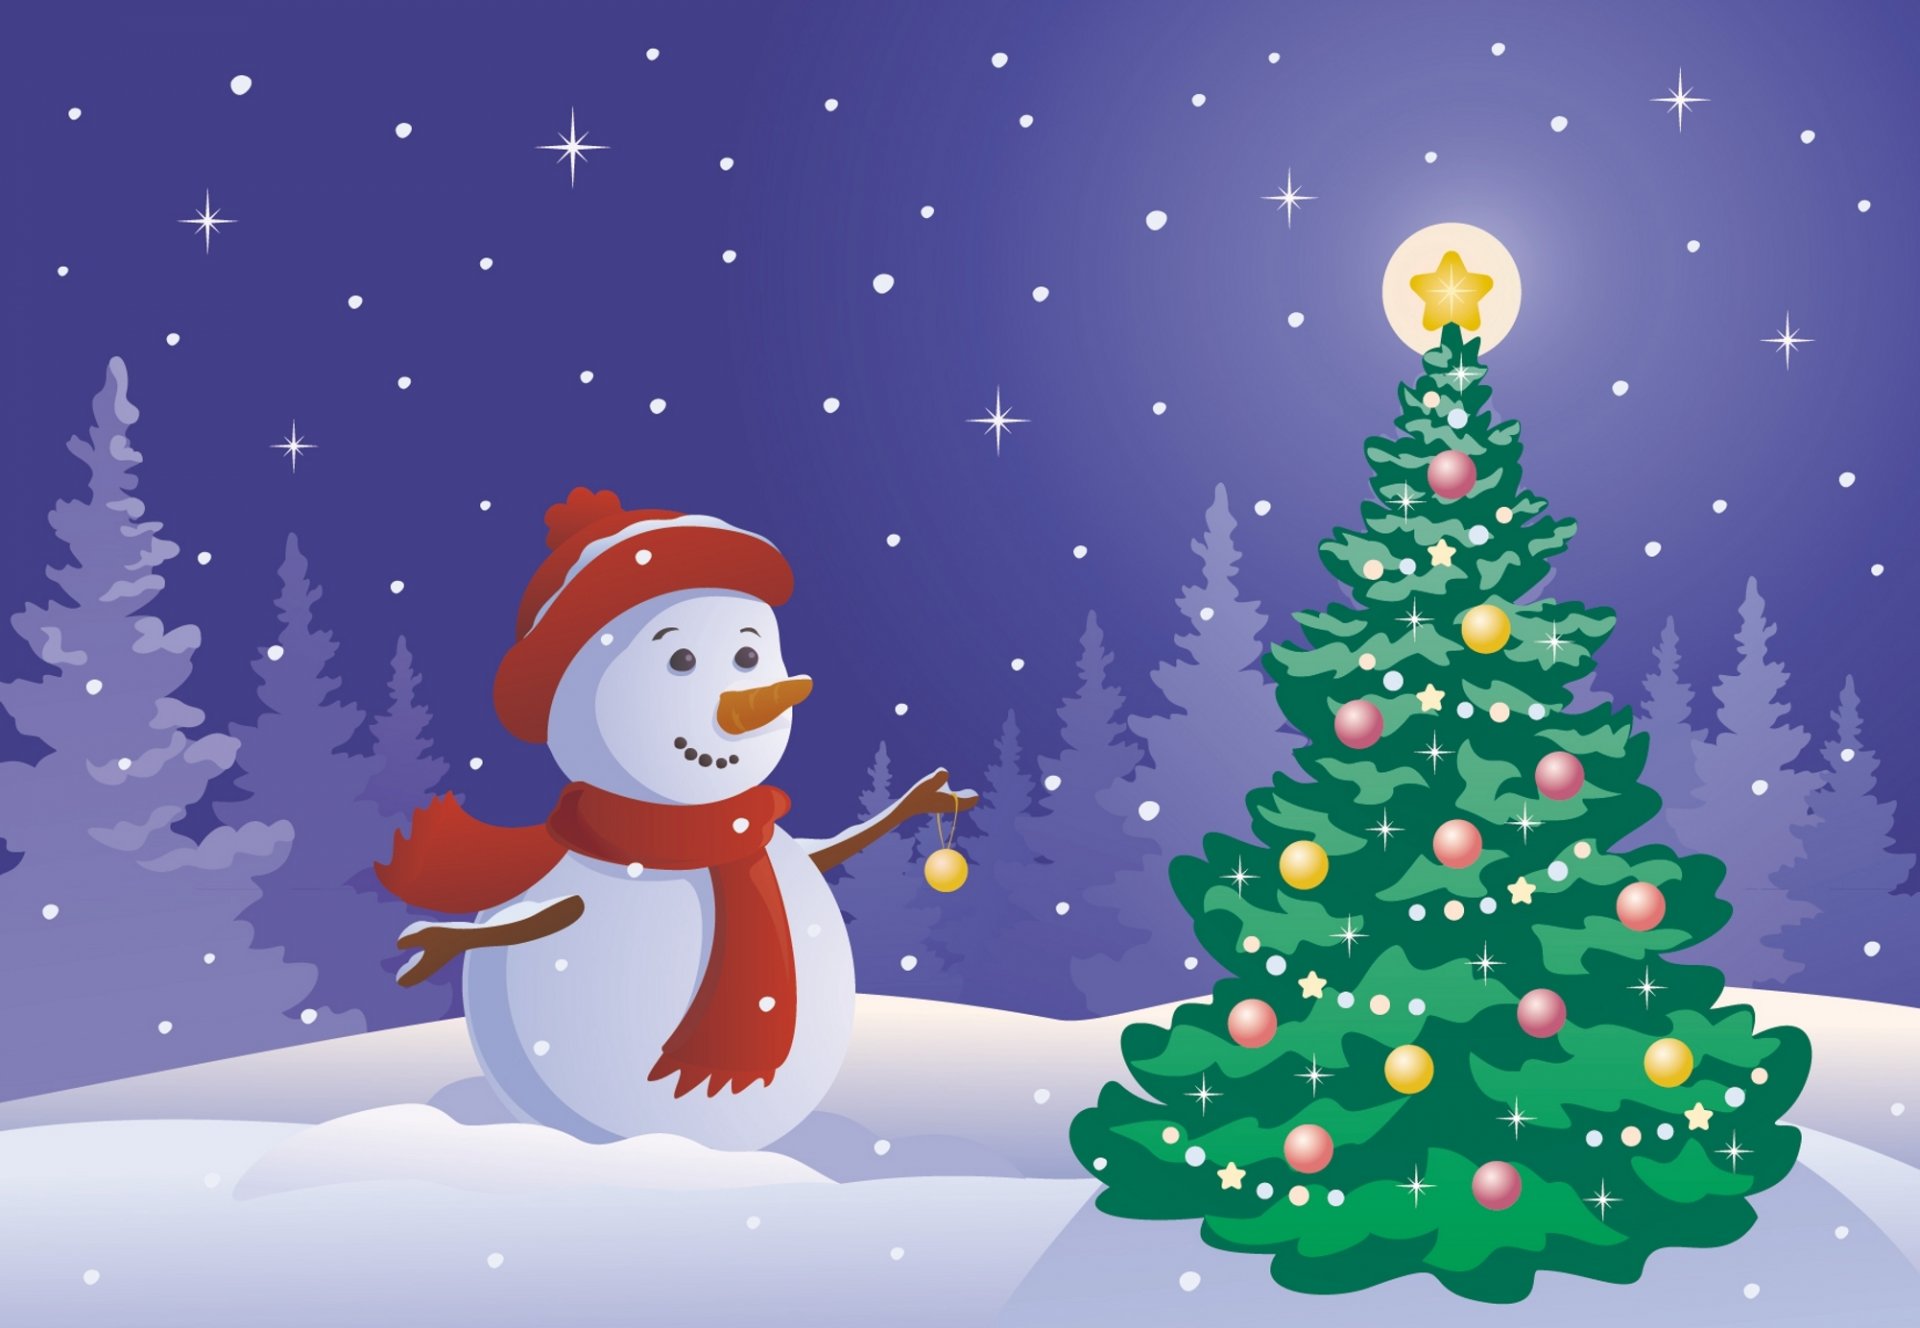 año nuevo muñeco de nieve árbol de navidad juguetes decoraciones estrellas